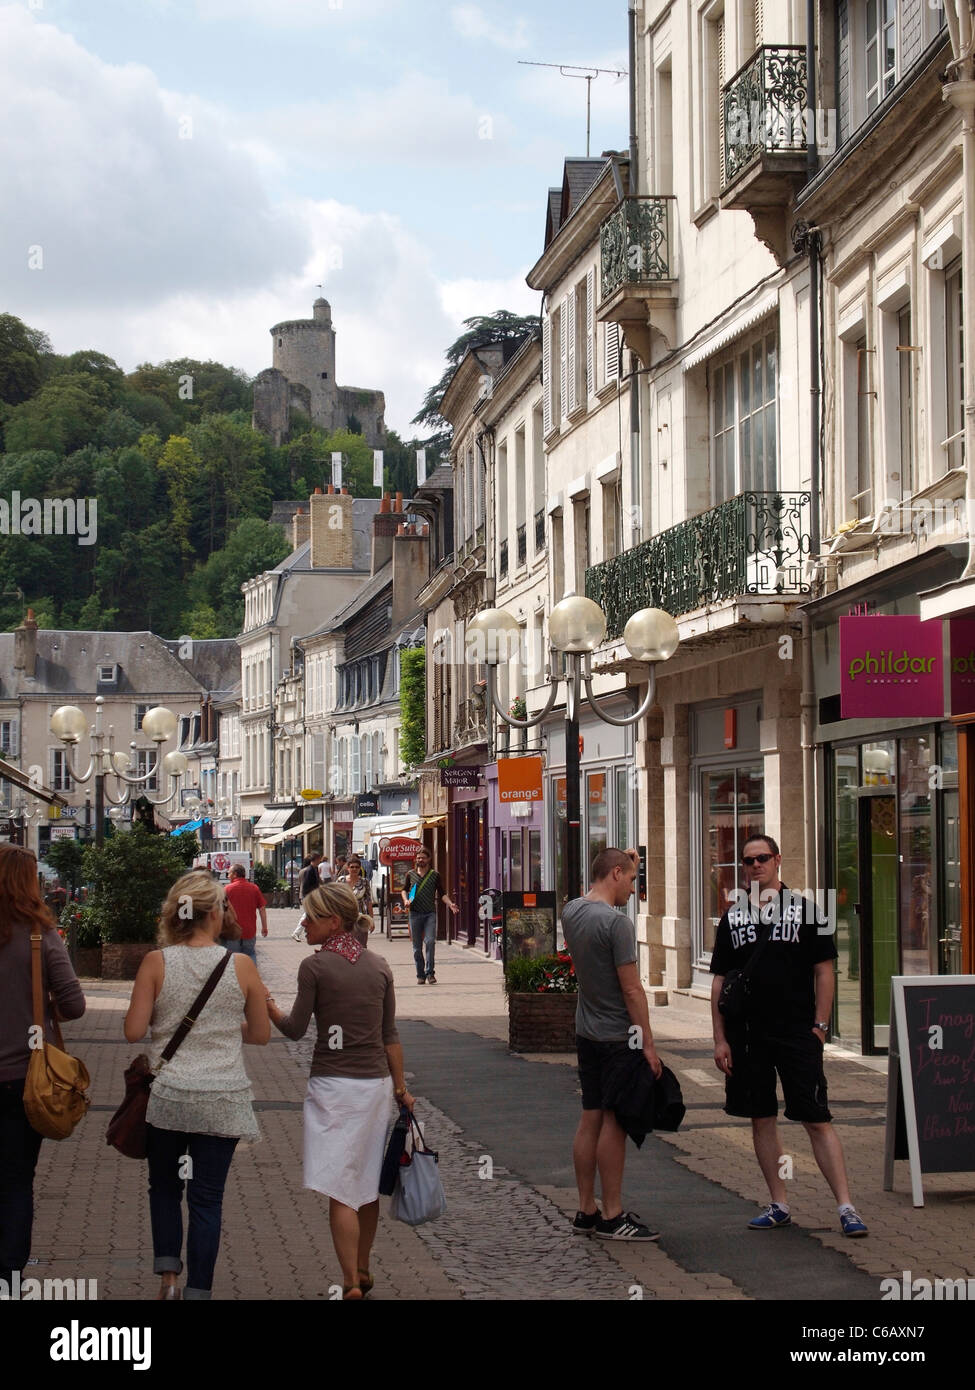 Calle comercial en el centro histórico de la ciudad de Vendome, Valle del Loira, Francia Foto de stock